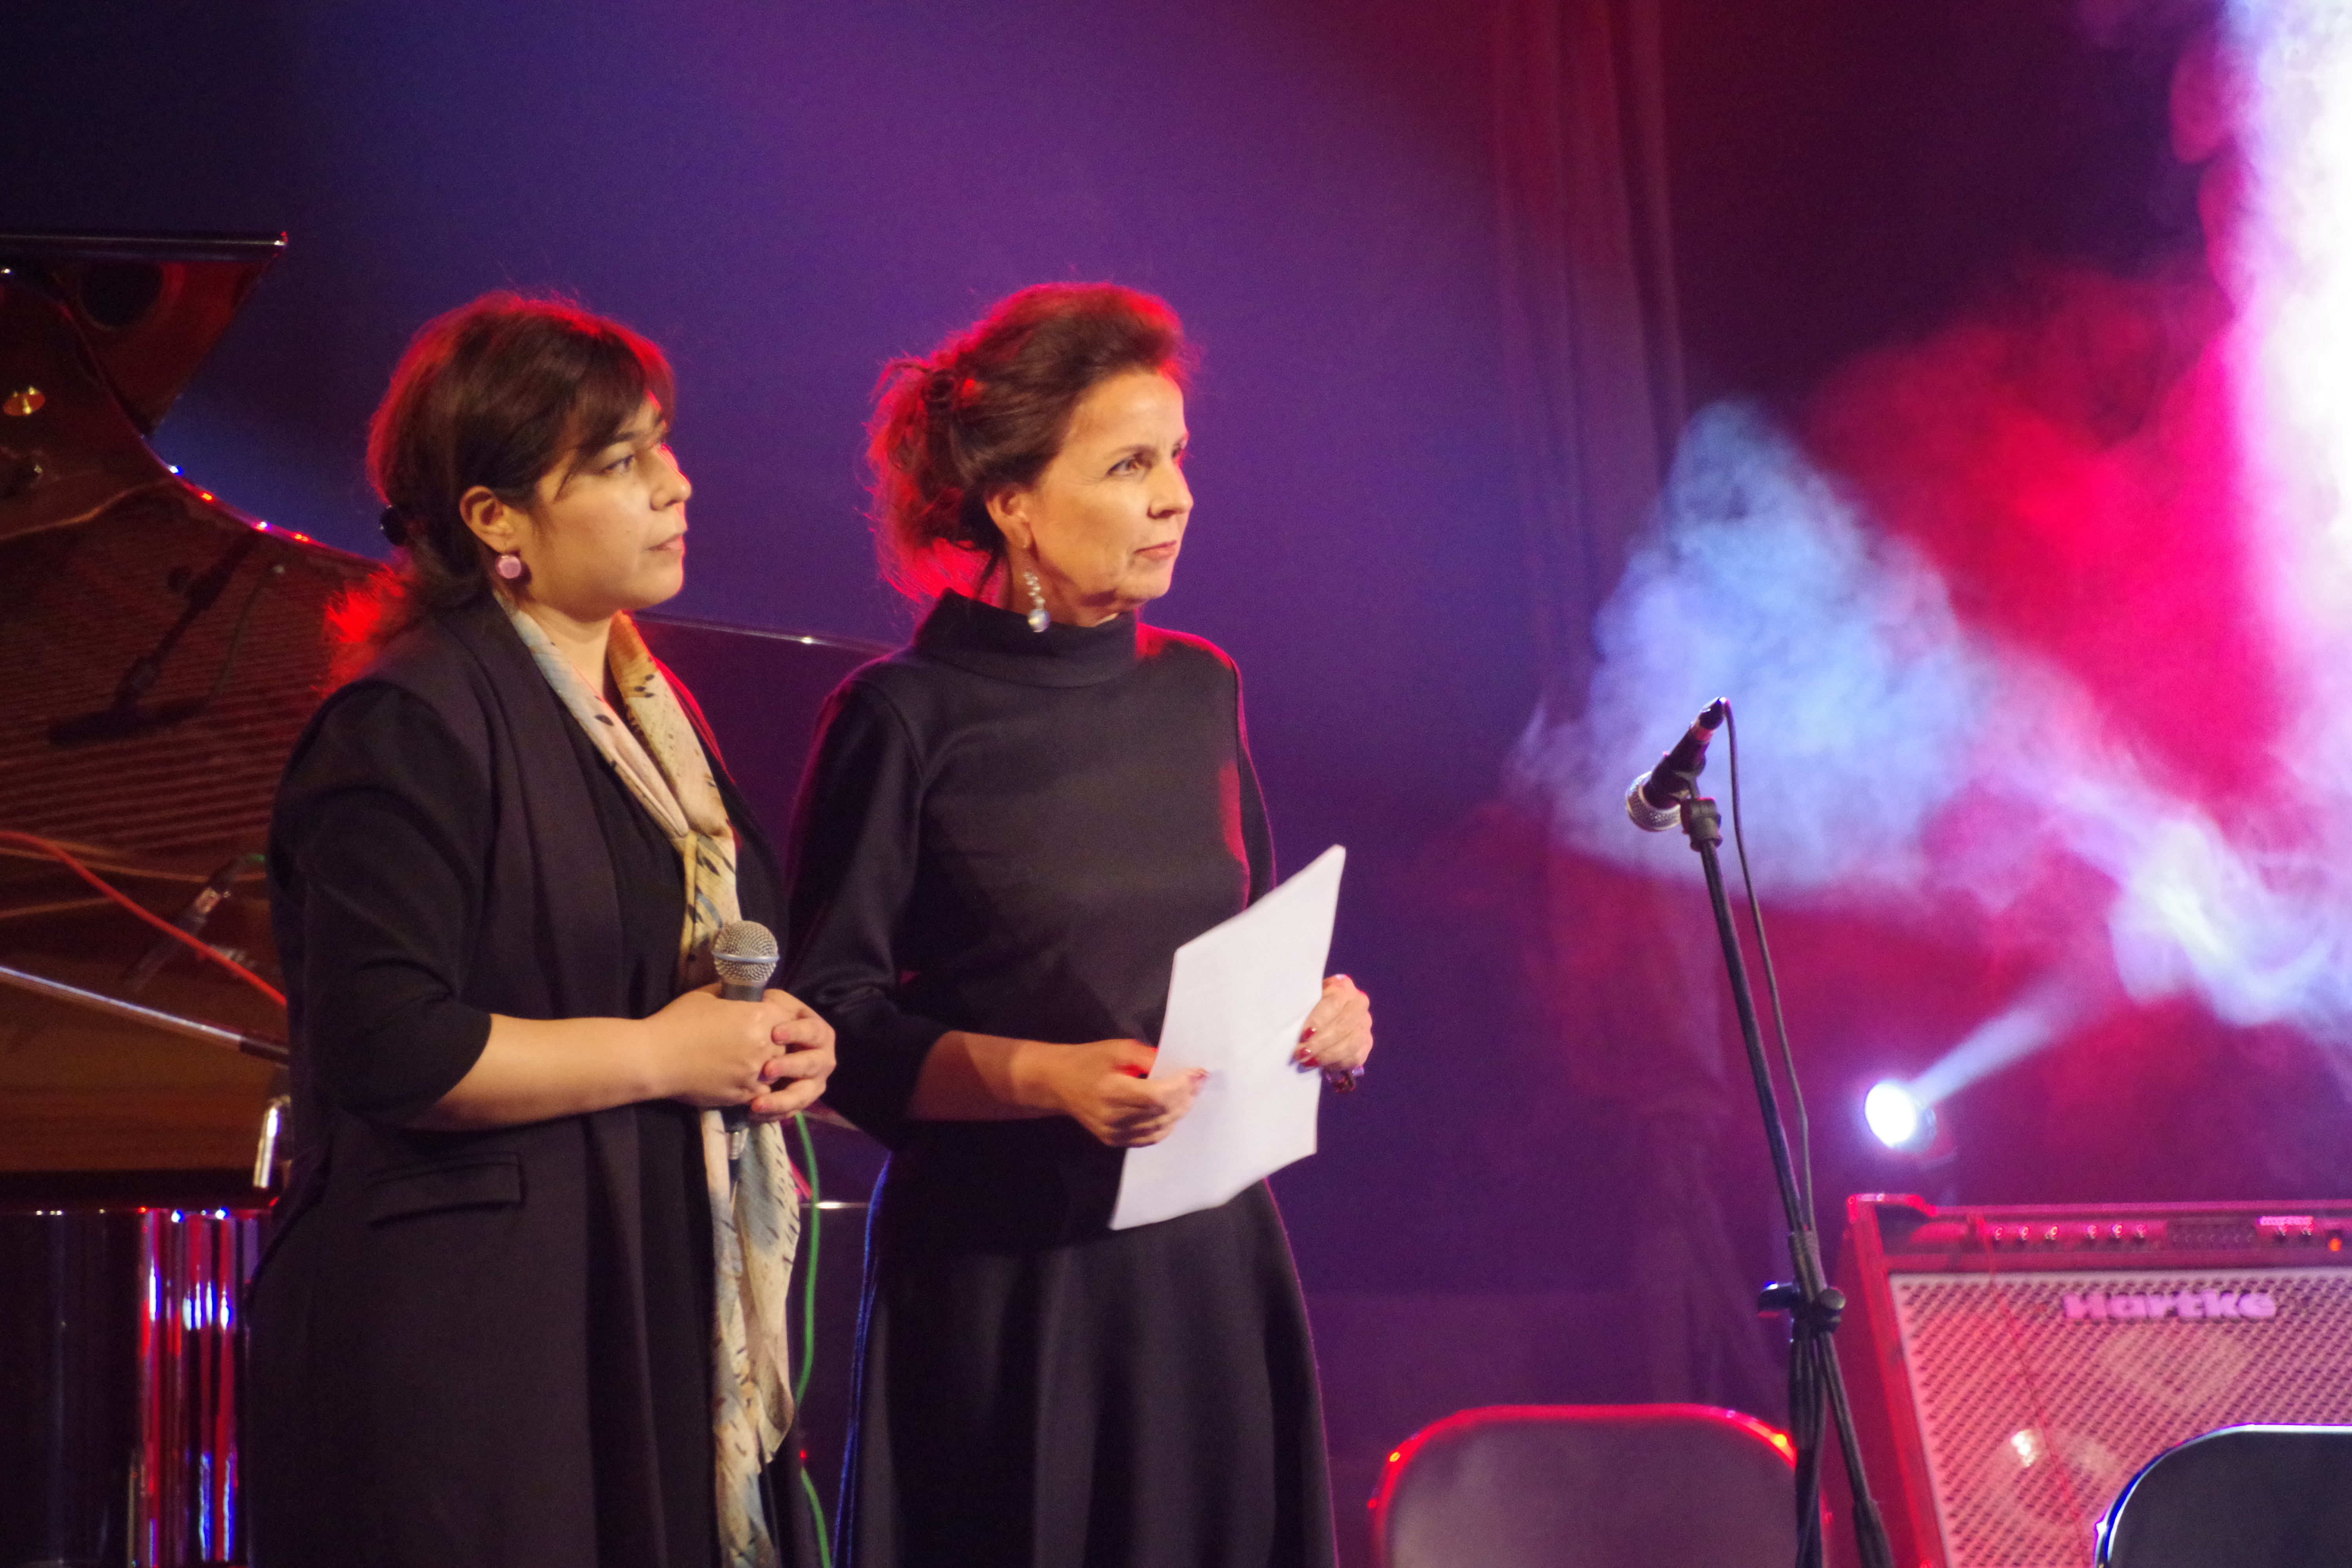 Walburga Roos, Direktorin von SCO Tadschikistan und Muattara Bashirova, Kunst- und Kulturleiterin von SCO Tadschikistan, die das Festival eröffnet hat.